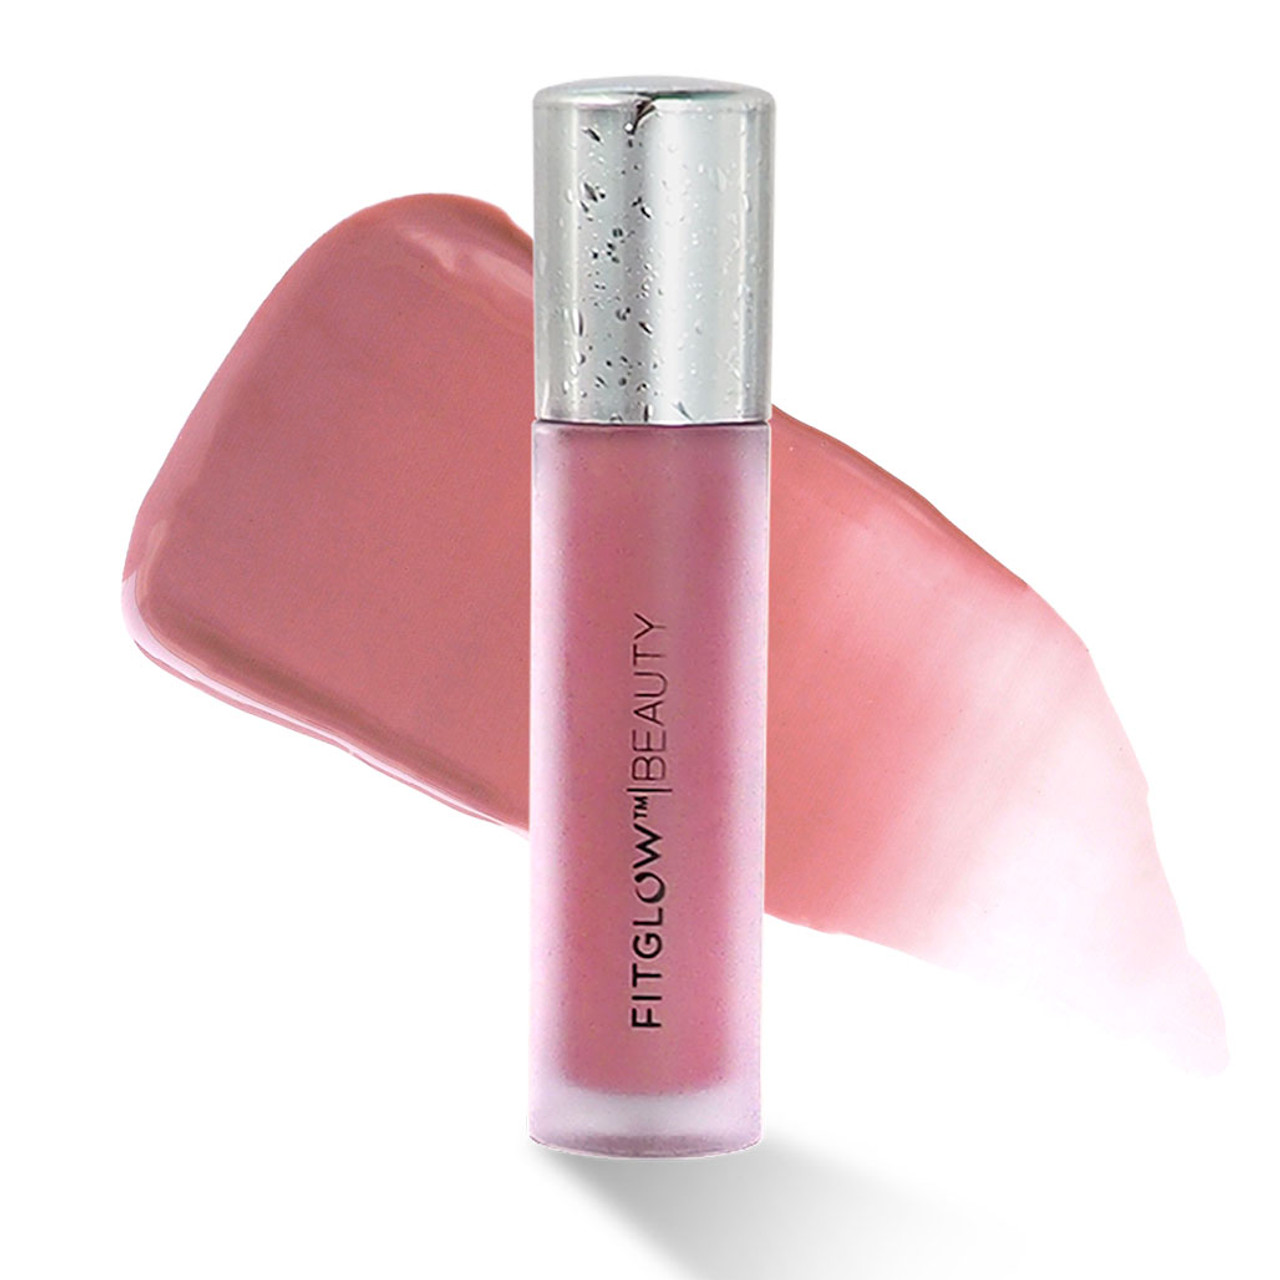 Fitglow beauty lip serum